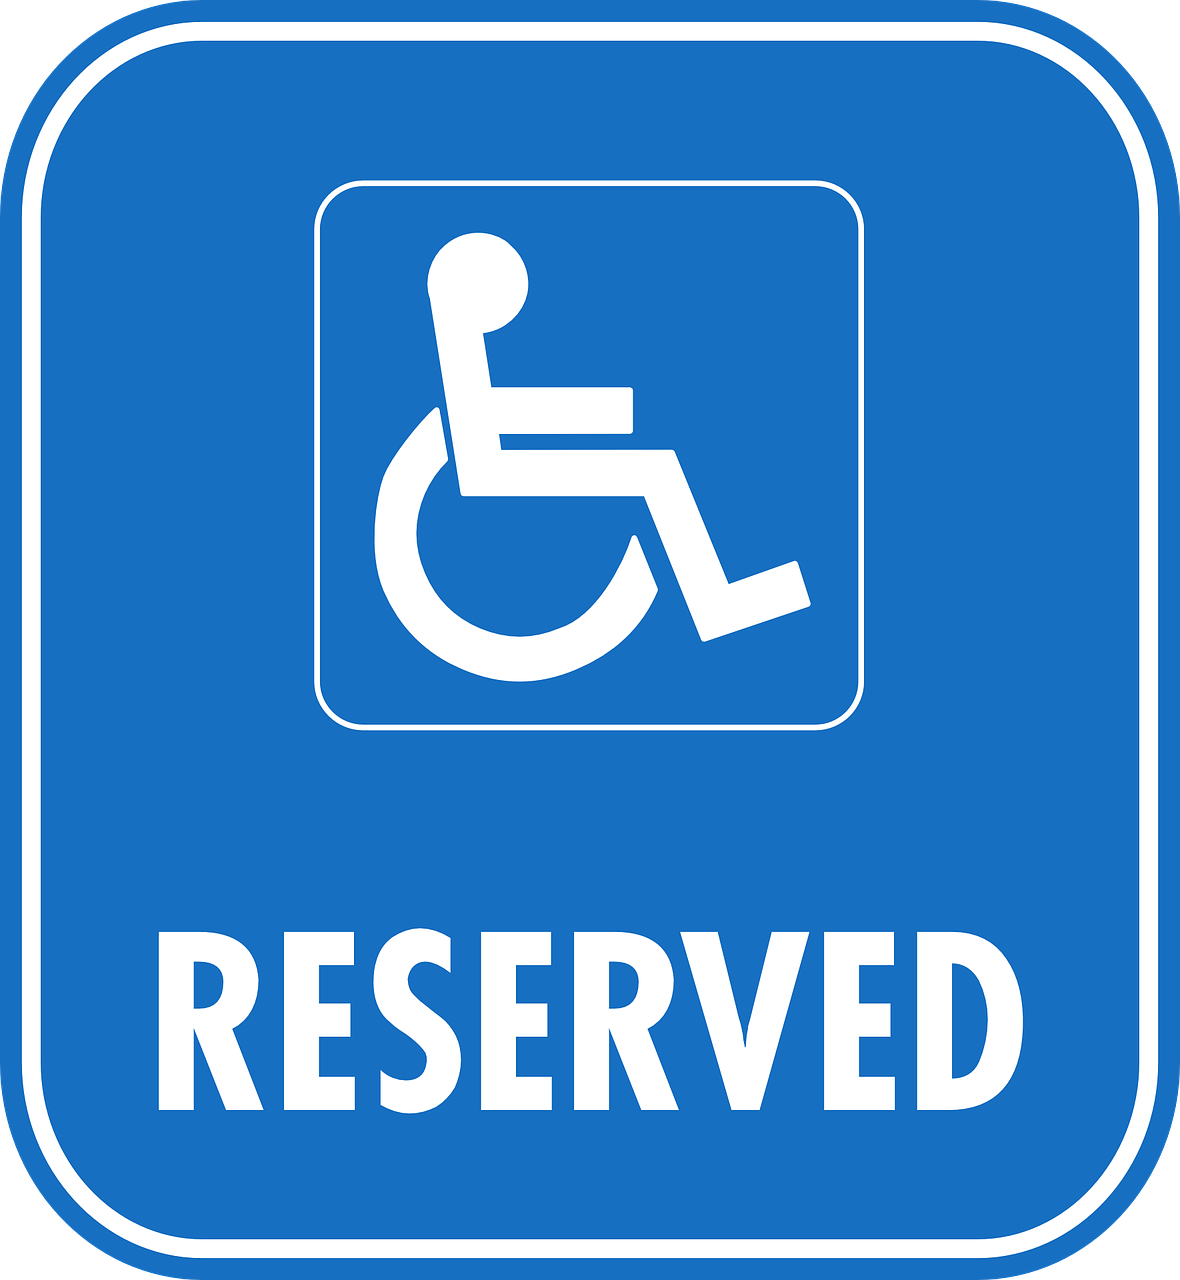 Geerts Gezondheidszorg instellingen voor gehandicaptenzorg verstandelijk gehandicapten